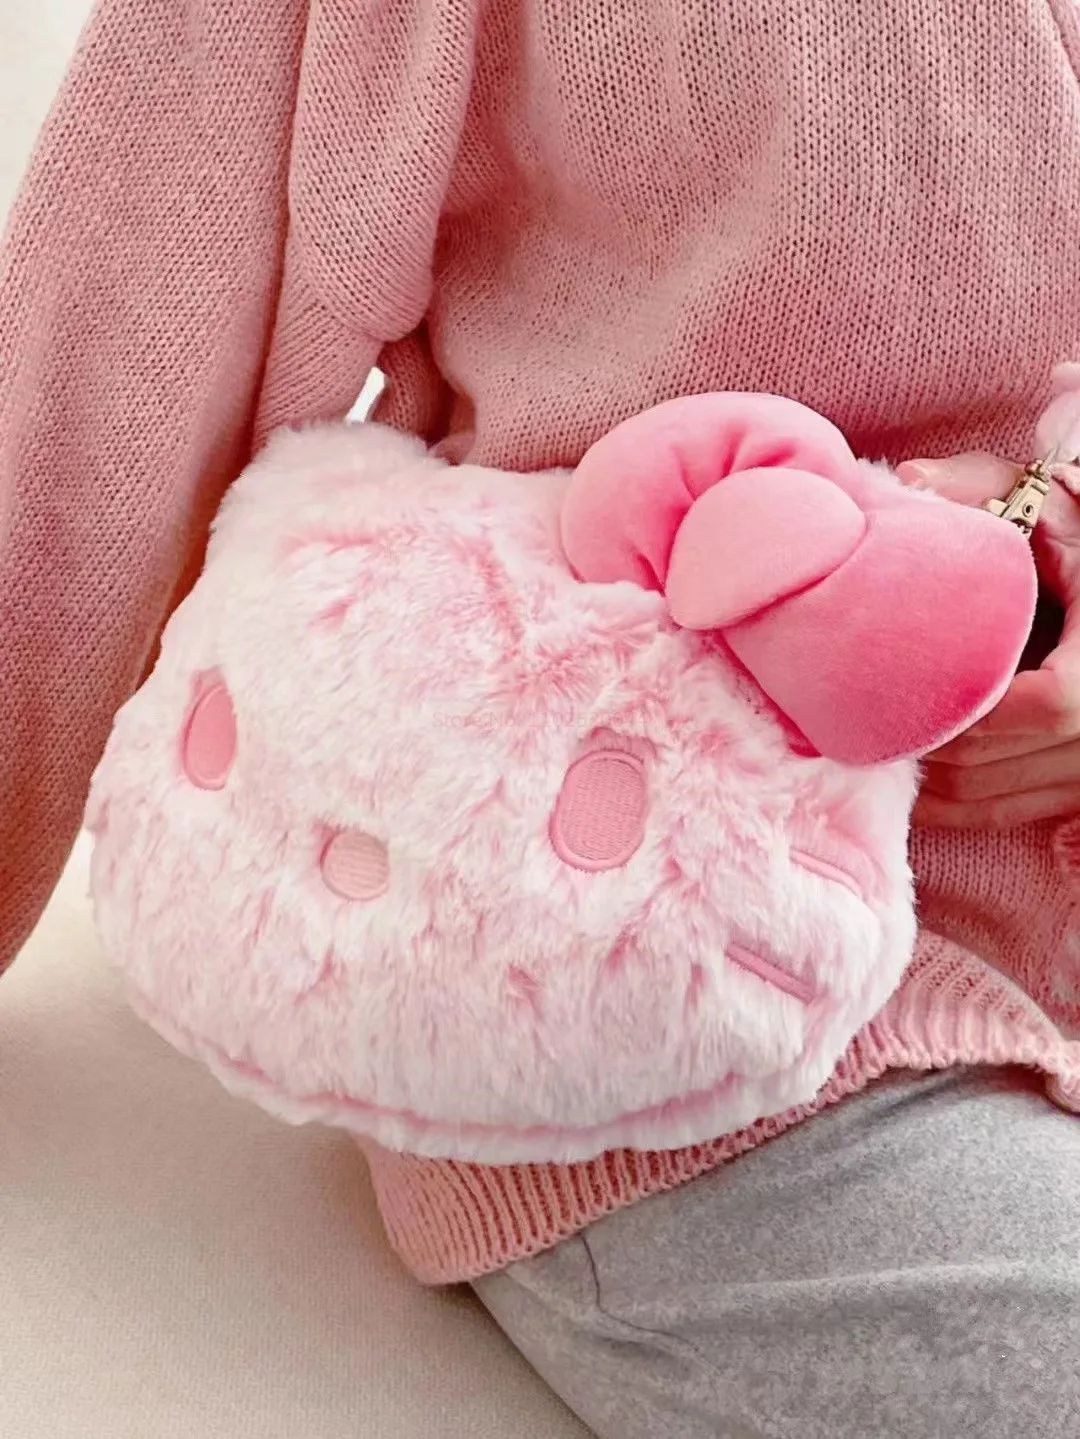 Плюшевая сумочка Sanrio Hello Kitty Kawaii, милая косметичка для девочек, Мультяшный Аниме-кошелек на одно плечо, подарки на день рождения